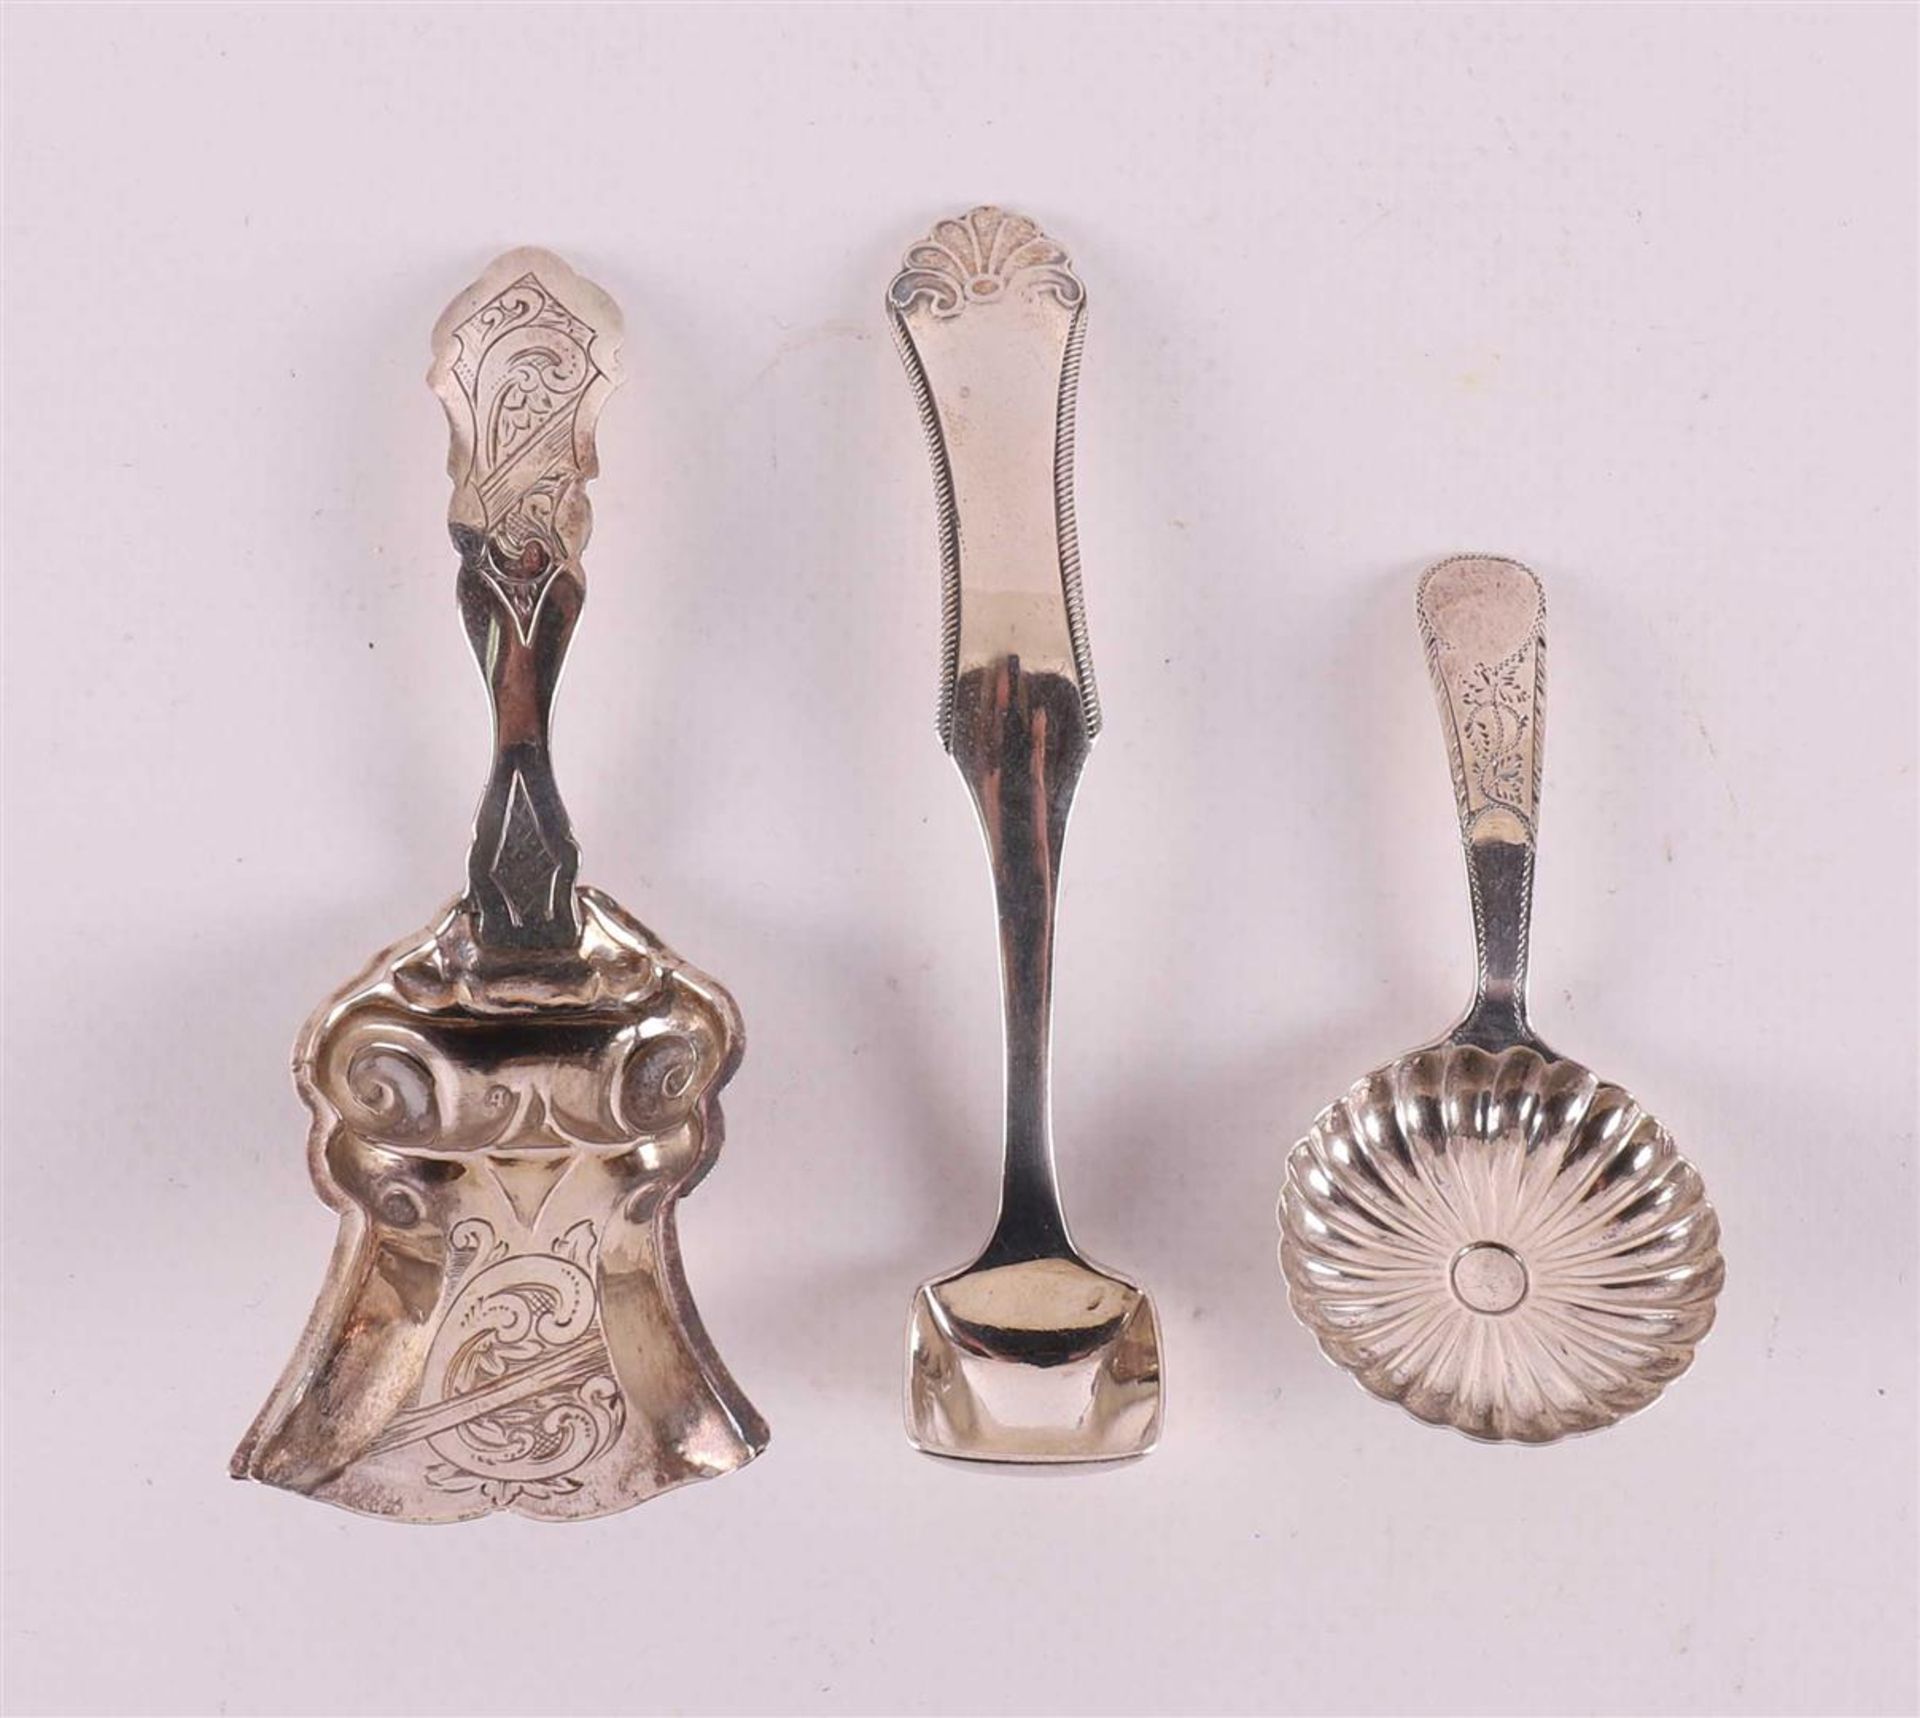 A silver tea spoon, mustard spoon and sugar spoon, 19th century.